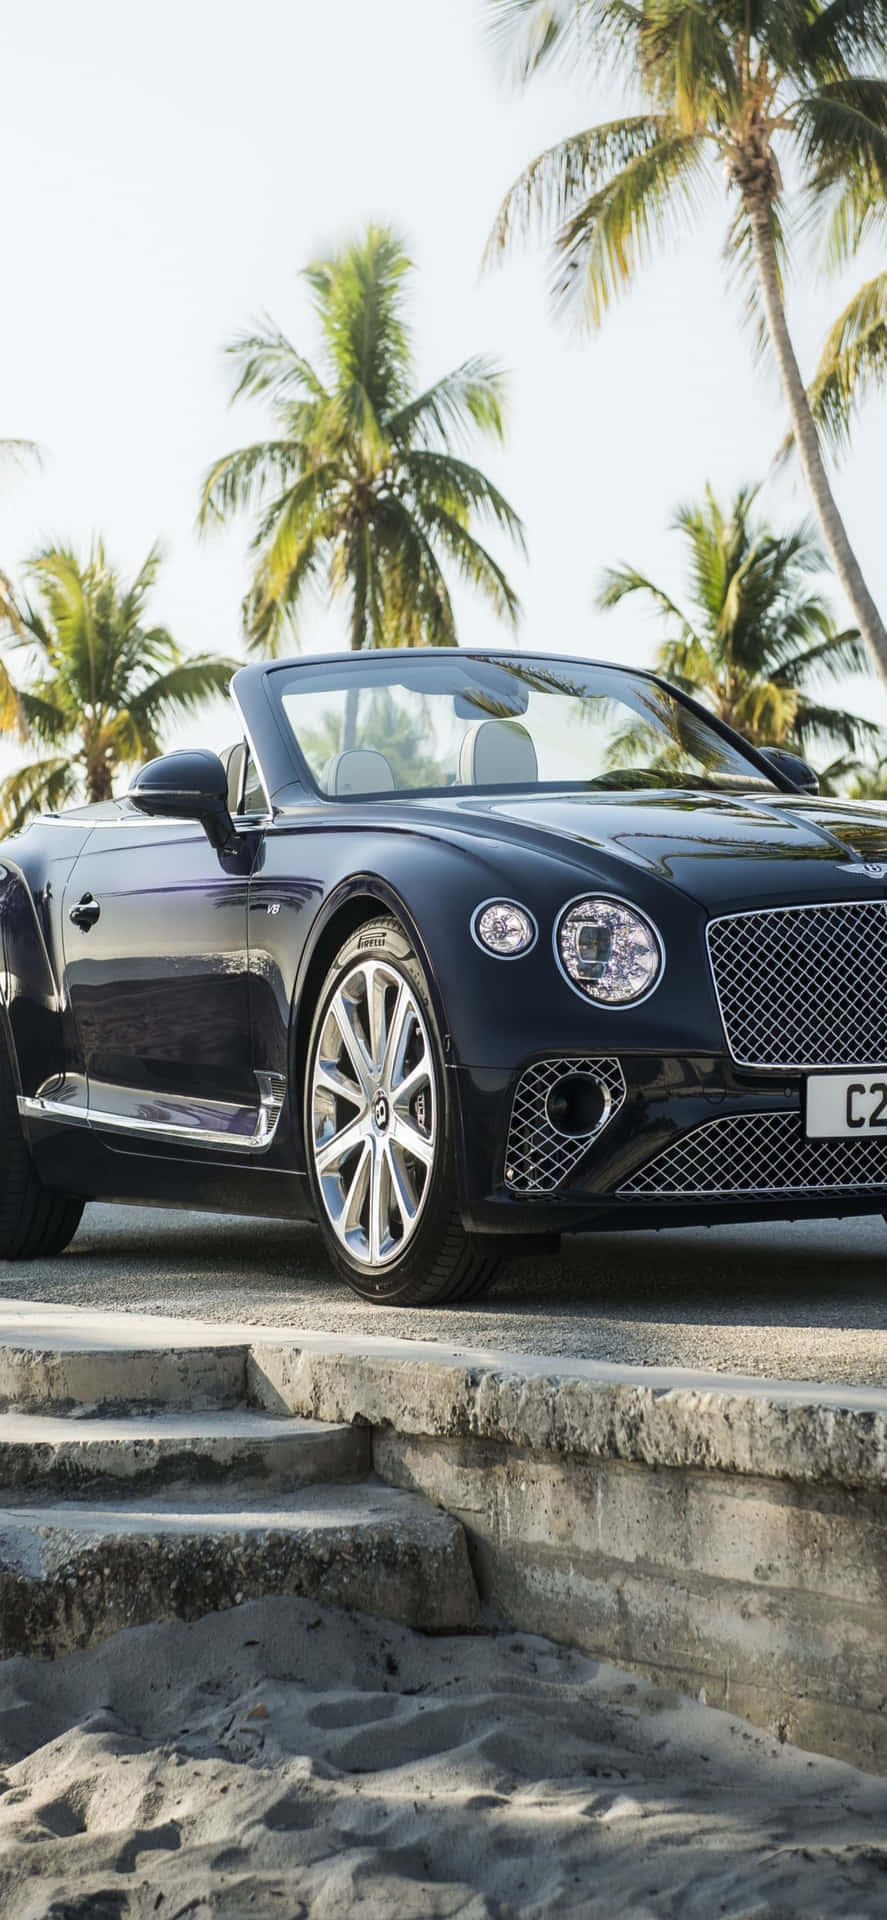 Føl som en million dollars med den helt nye Iphone Xs Max, nu med et Bentley-designet baggrund.